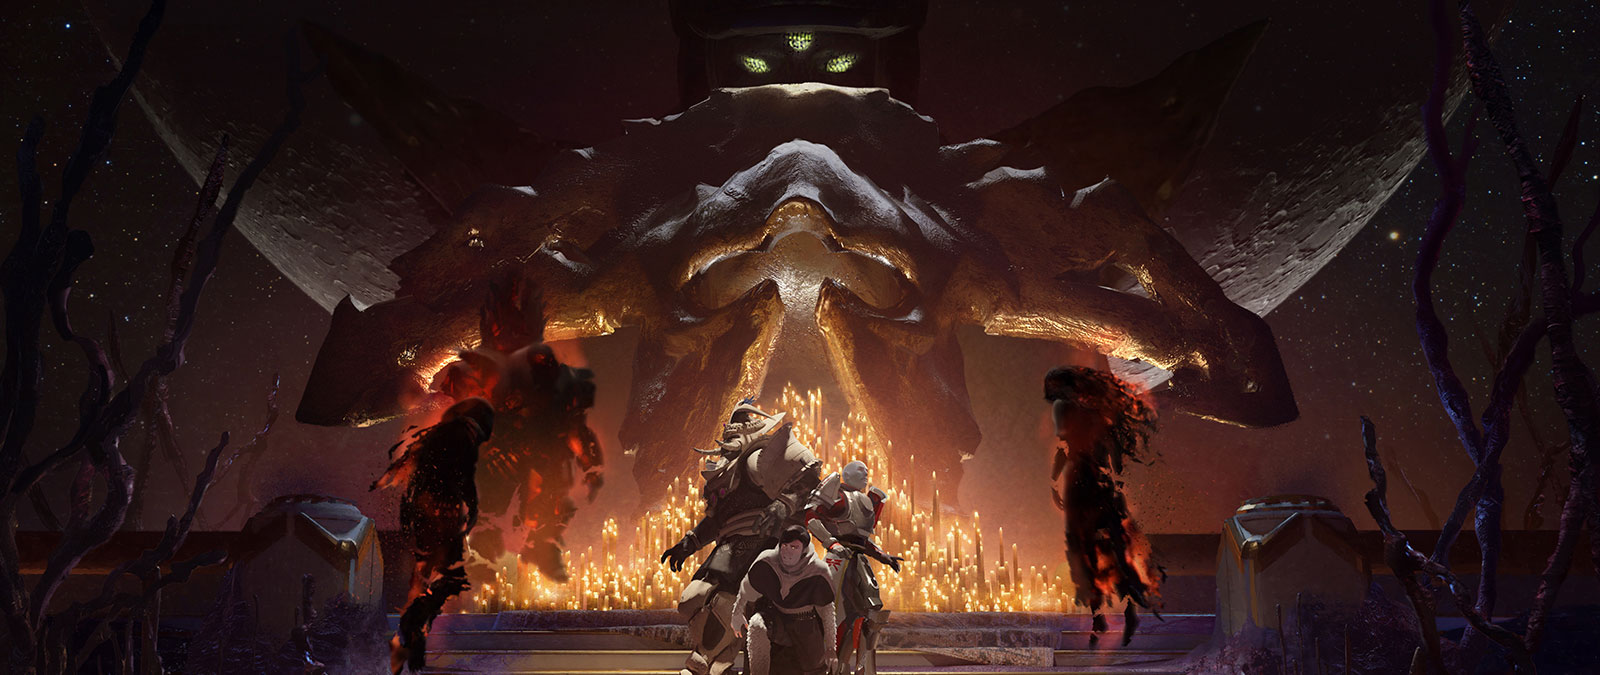 背景で Leviathan が見守る中、火のともったロウソクに囲まれて怯えているプレイヤーのグループに、ナイトメアの 3 人のボスが近づく。 